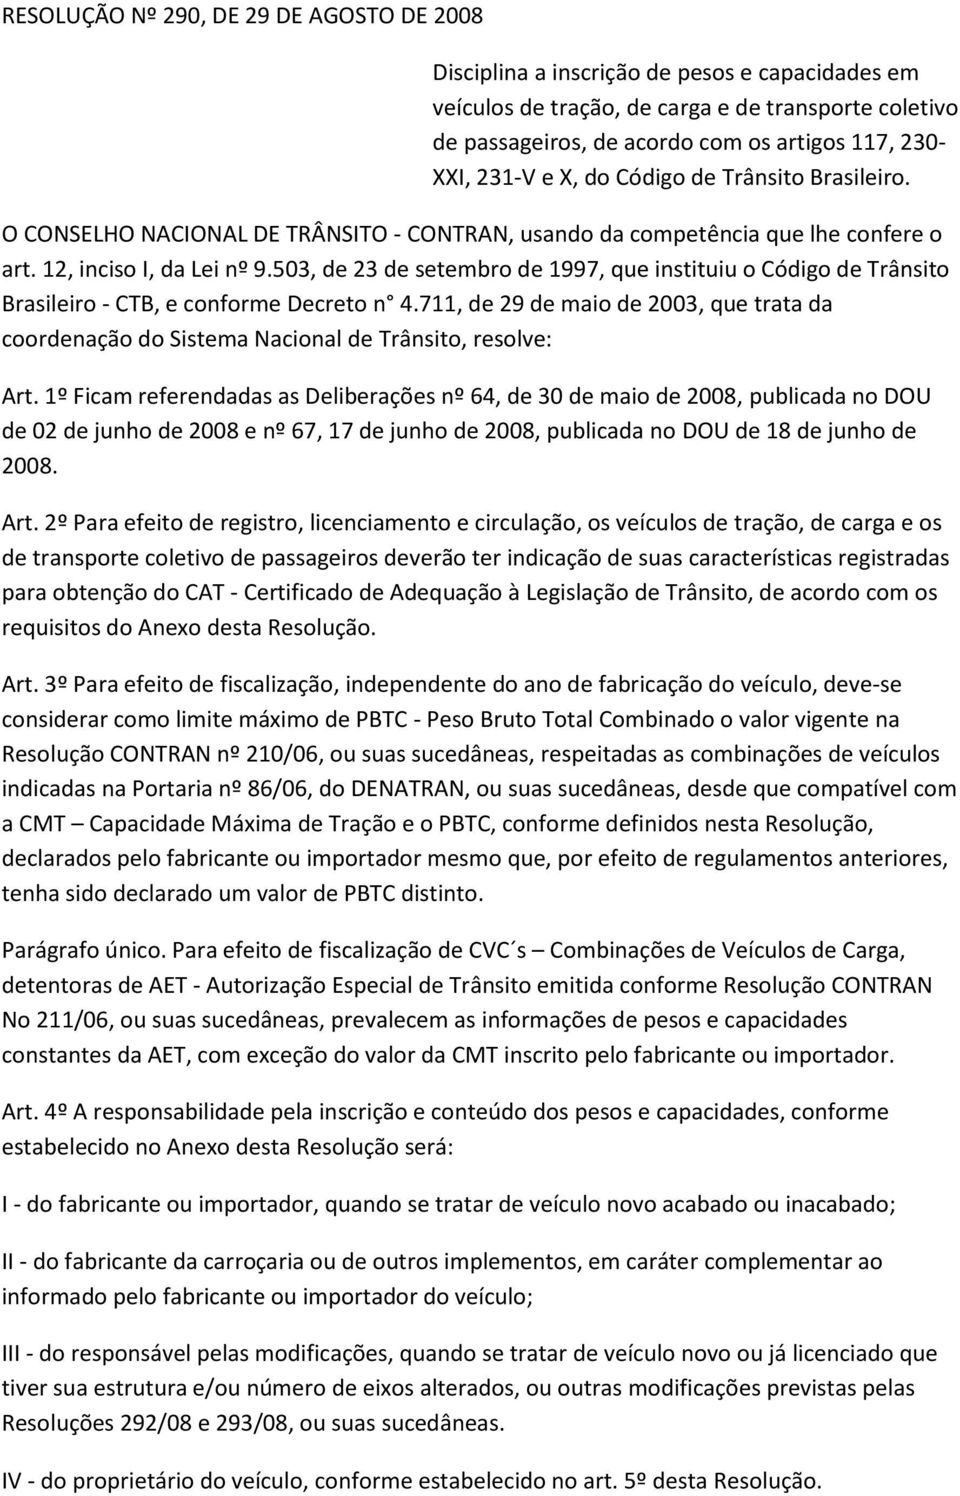 503, de 23 de setembro de 1997, que instituiu o Código de Trânsito Brasileiro - CTB, e conforme Decreto n 4.